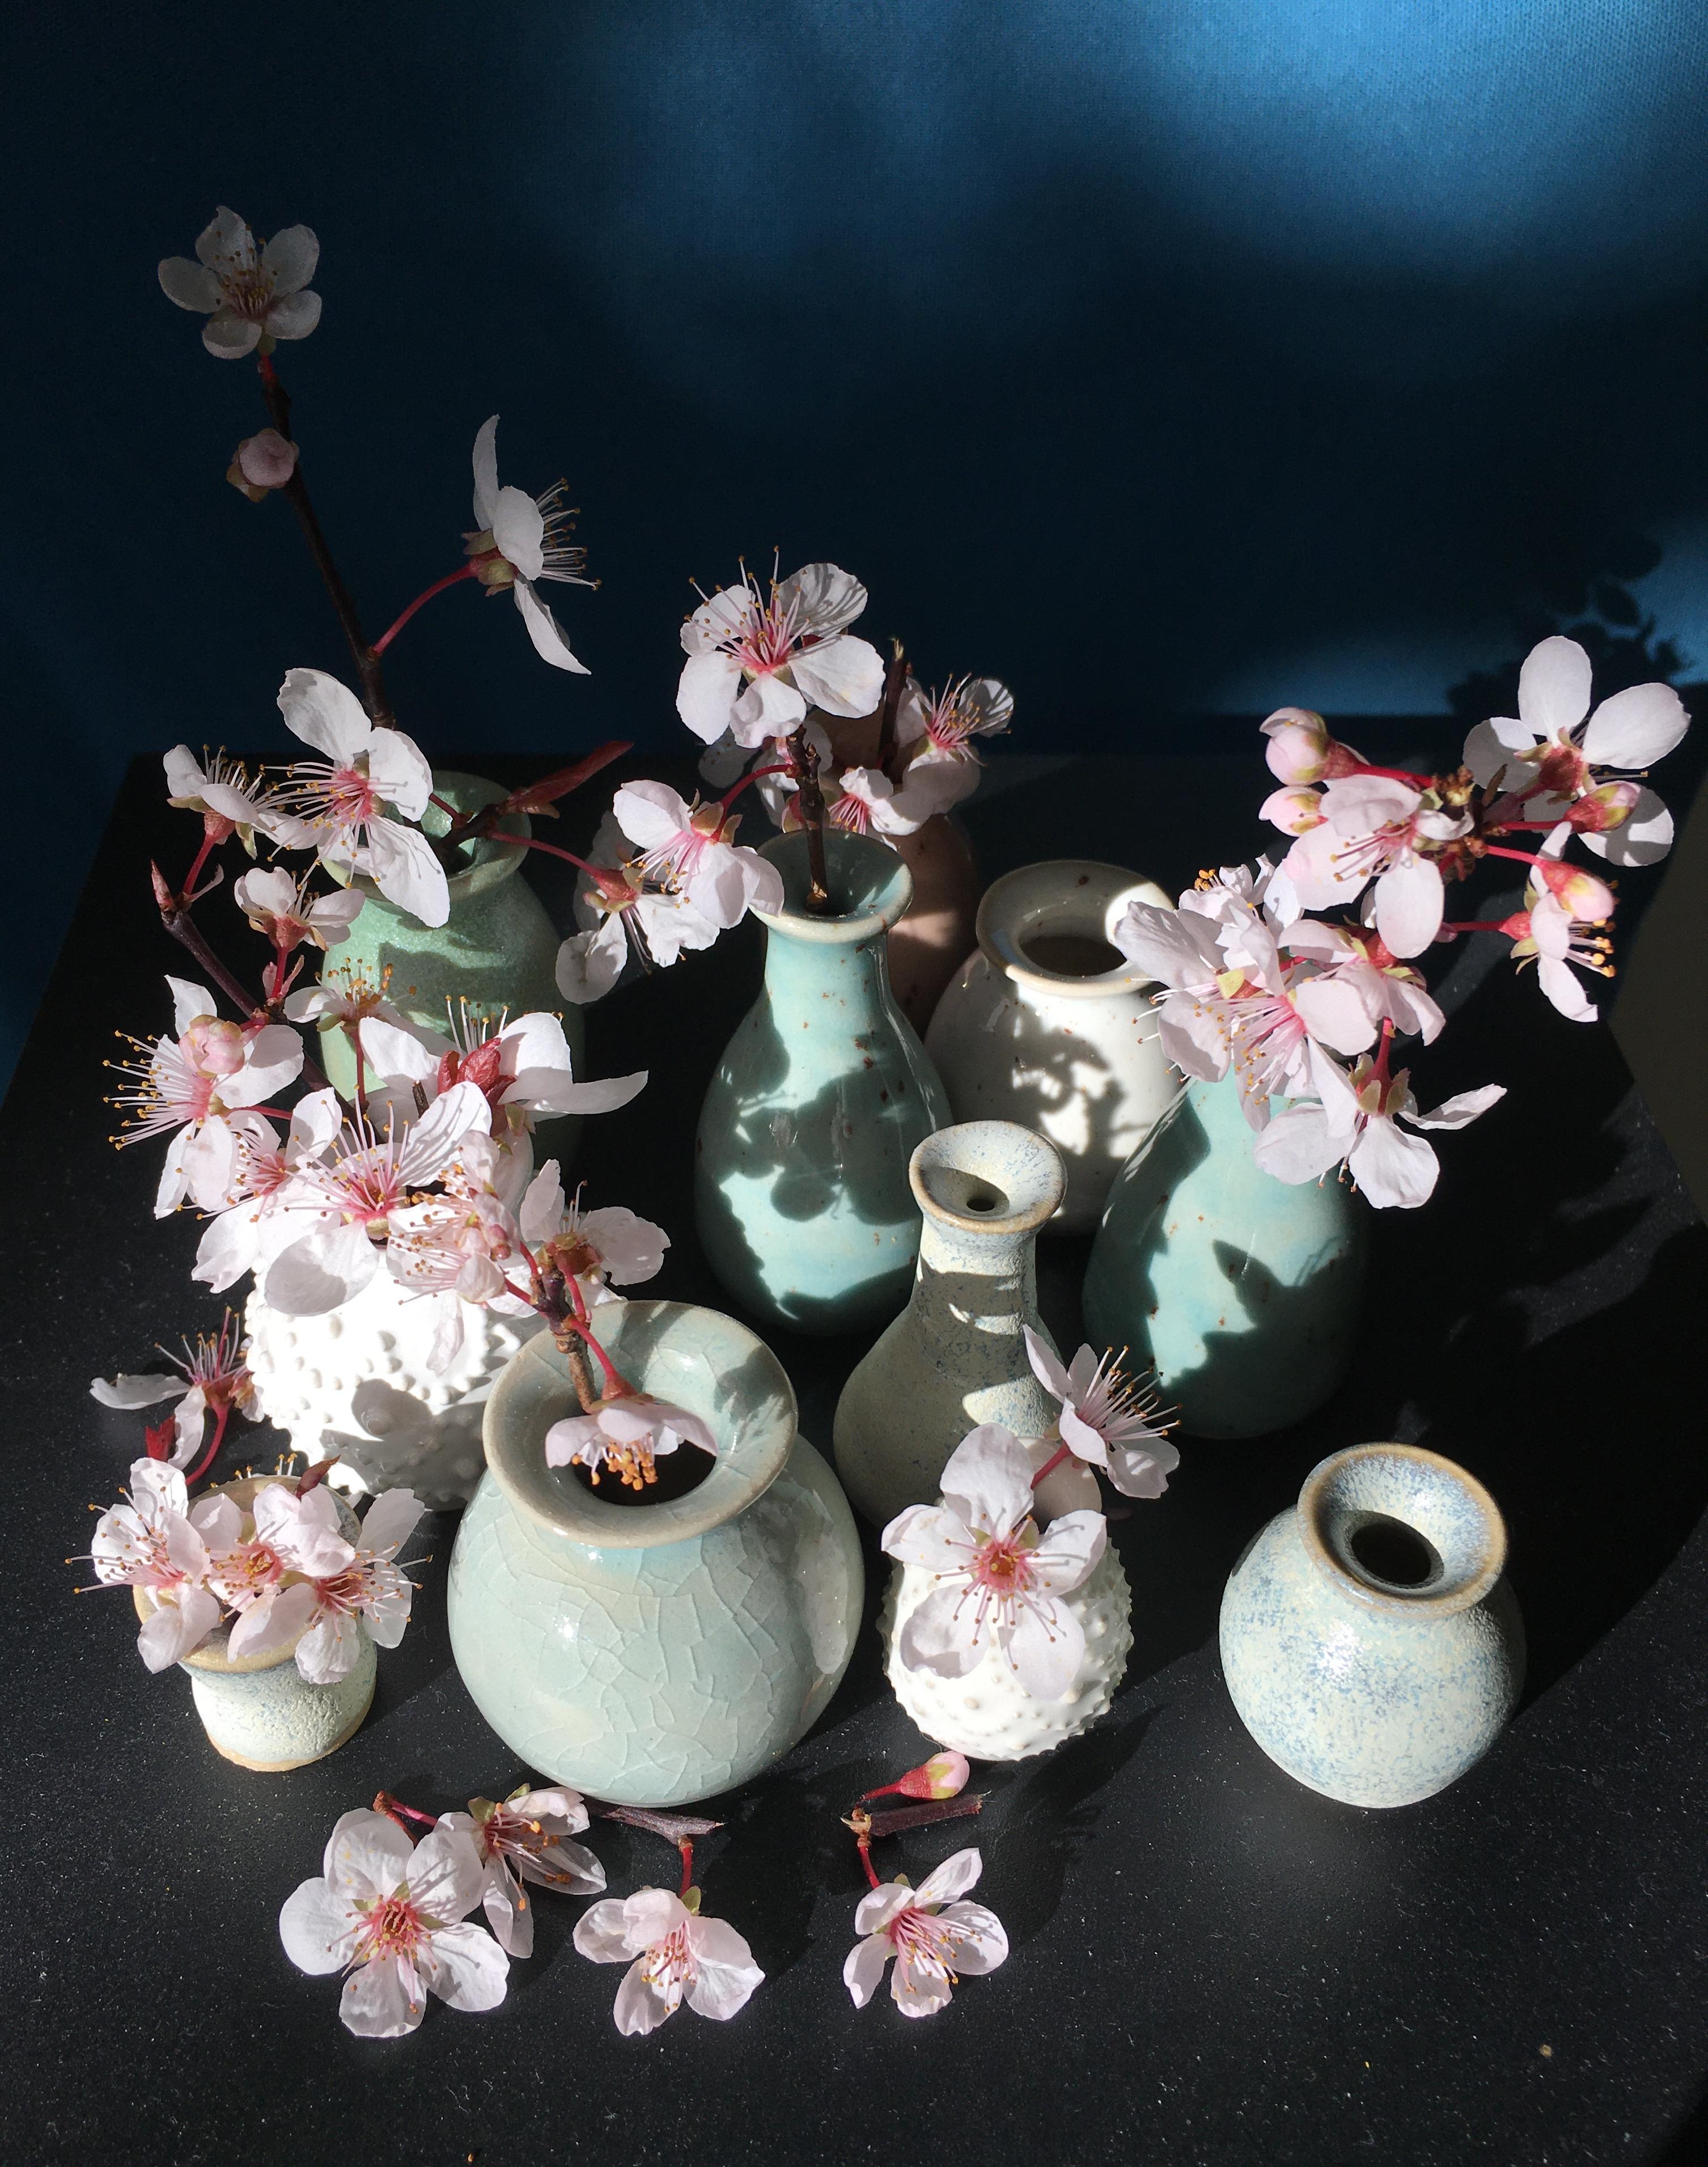 Minivasen in Pastellfarben -mein Deko-Highlight !!!
#minivasen #keramik #freshflowers #vase #blumen #dipkeramik